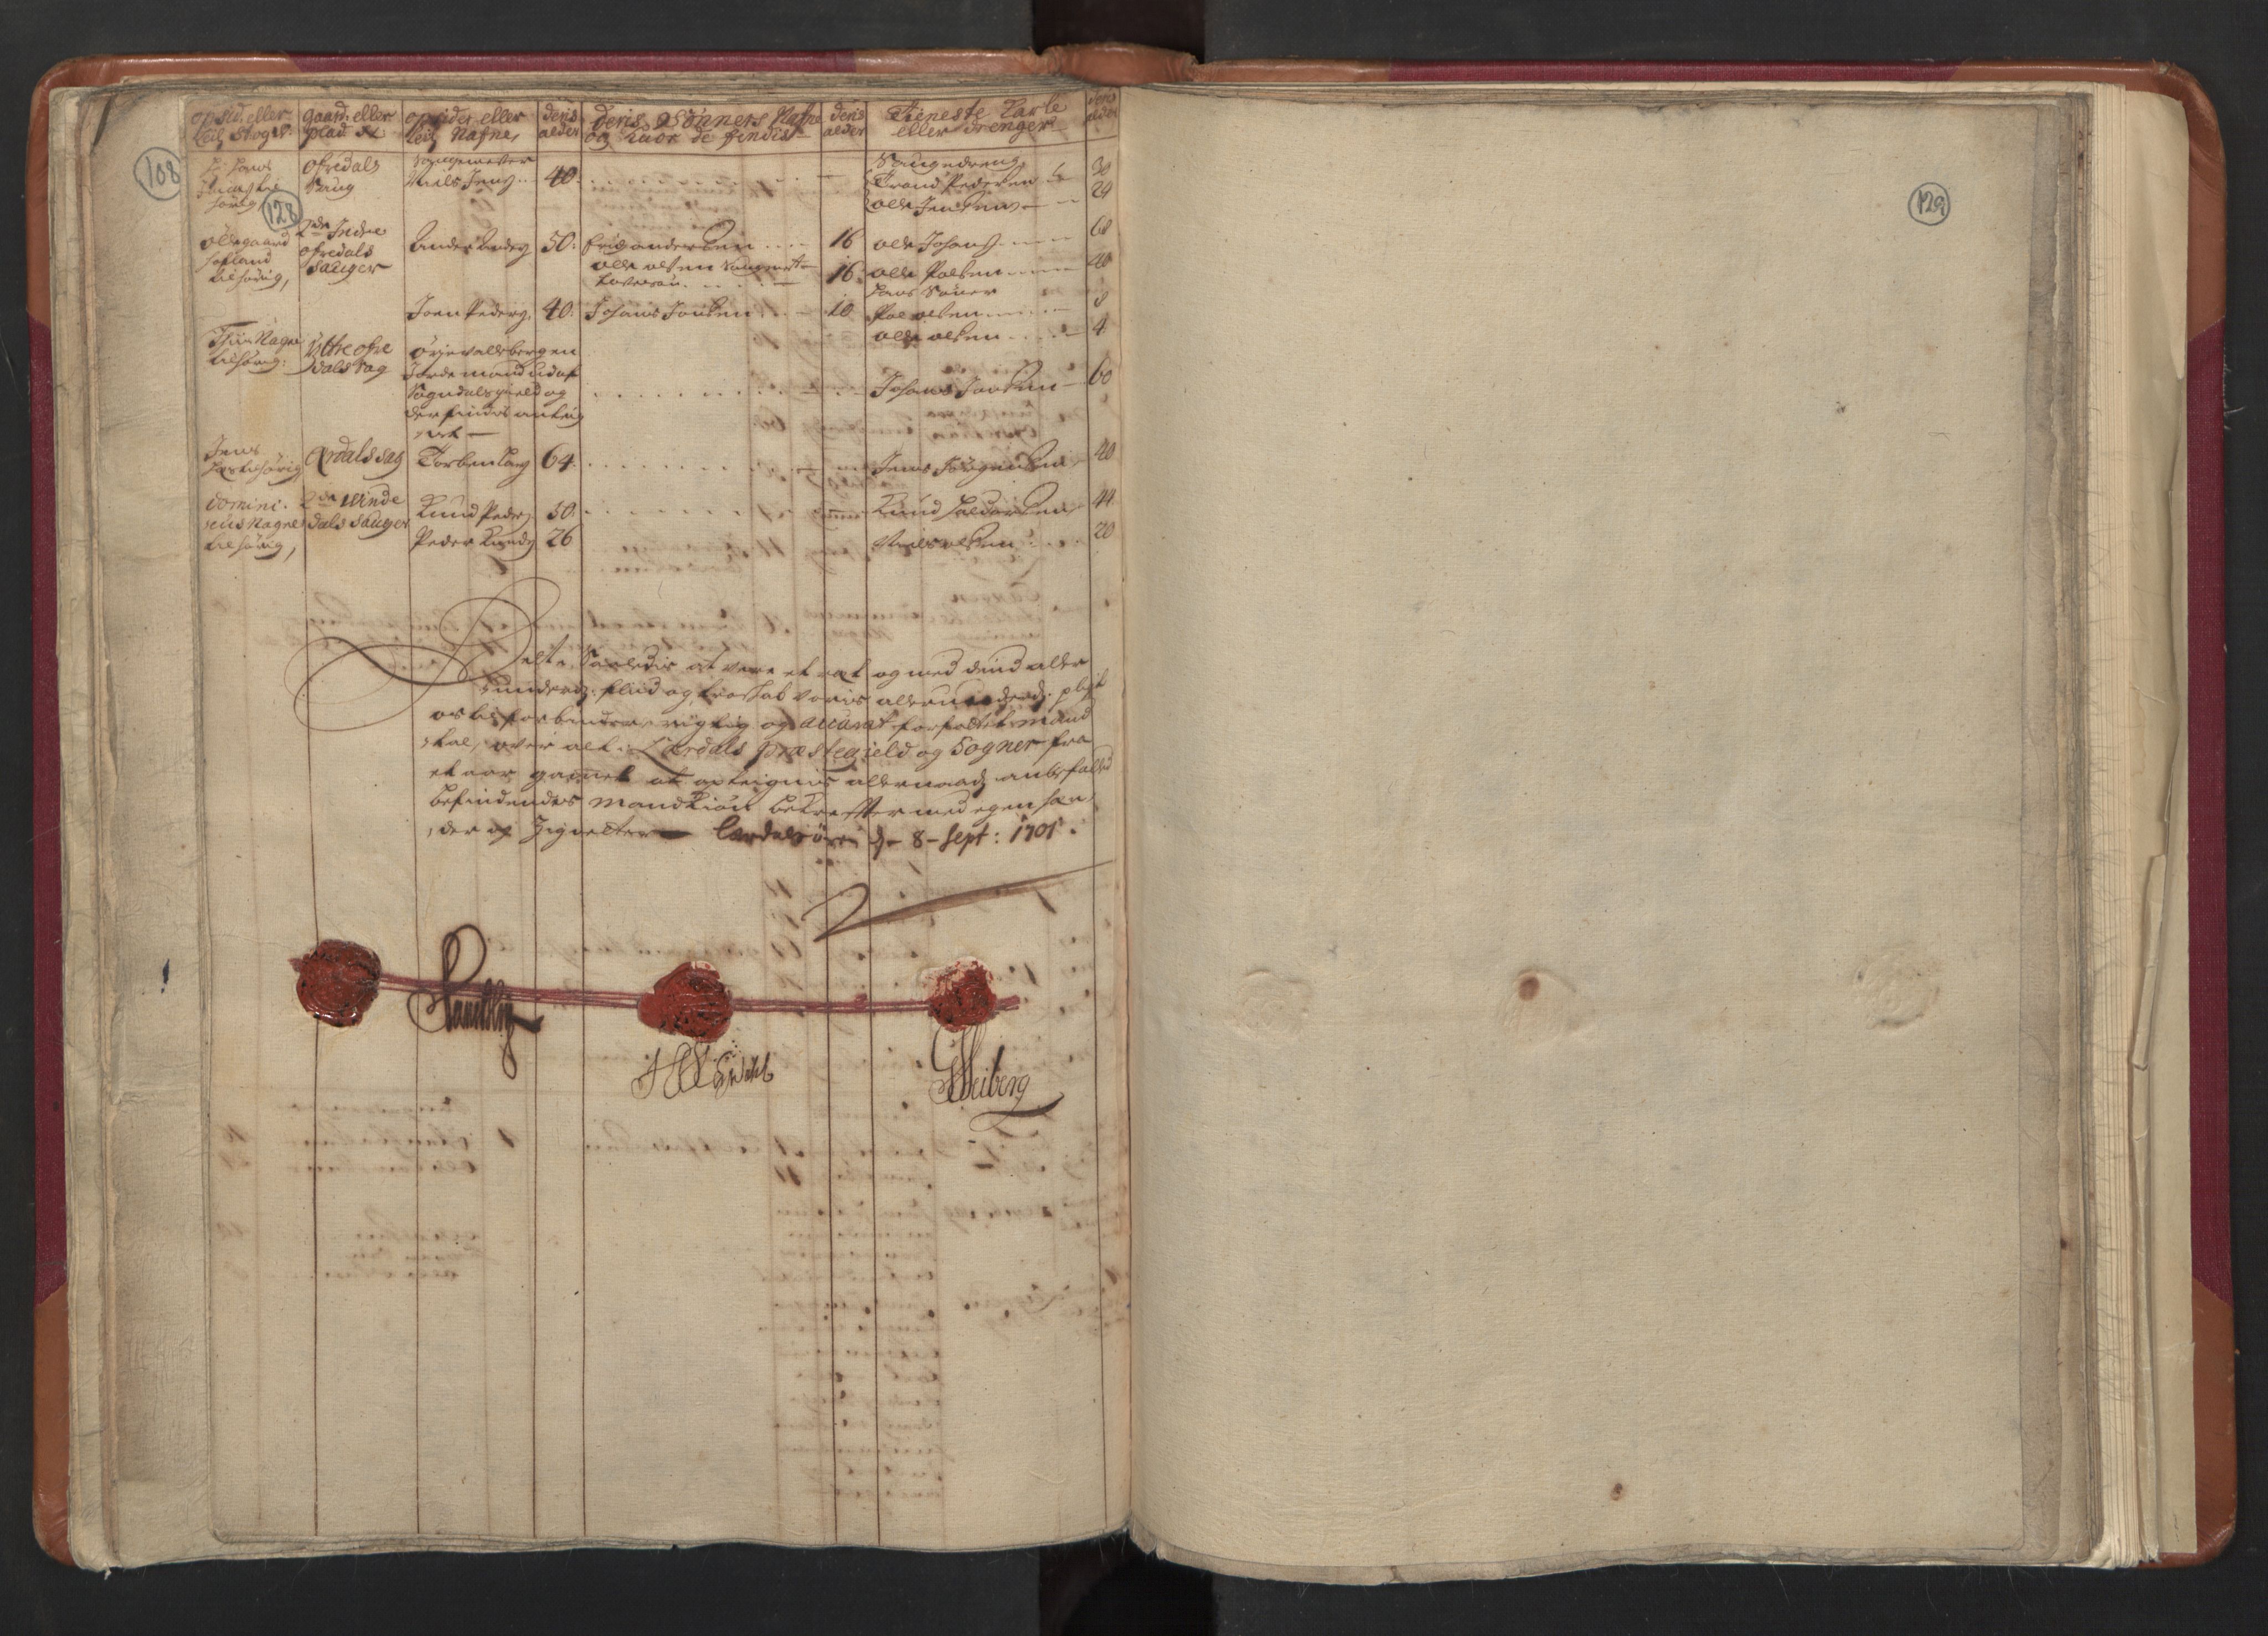 RA, Manntallet 1701, nr. 8: Ytre Sogn fogderi og Indre Sogn fogderi, 1701, s. 128-129